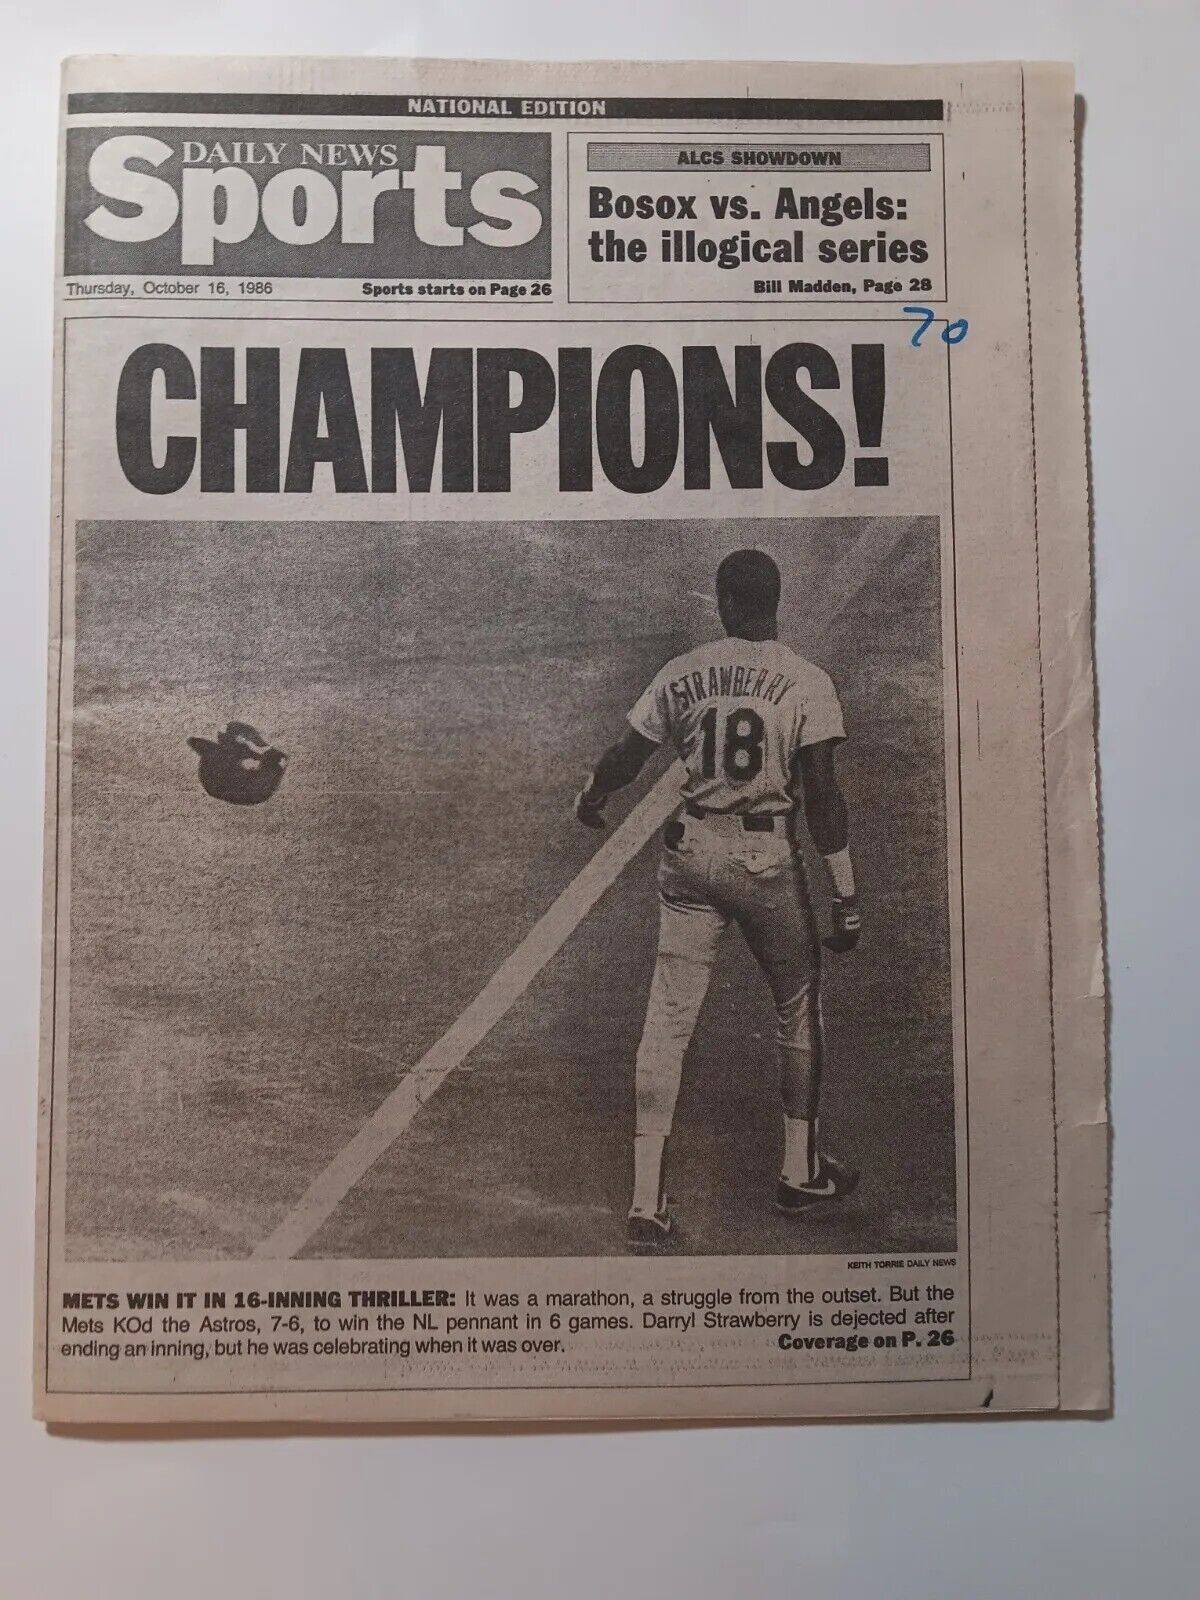 N.Y Mets win NL pennant beat astros in thriller oct. 16,1986 N.Y daily news